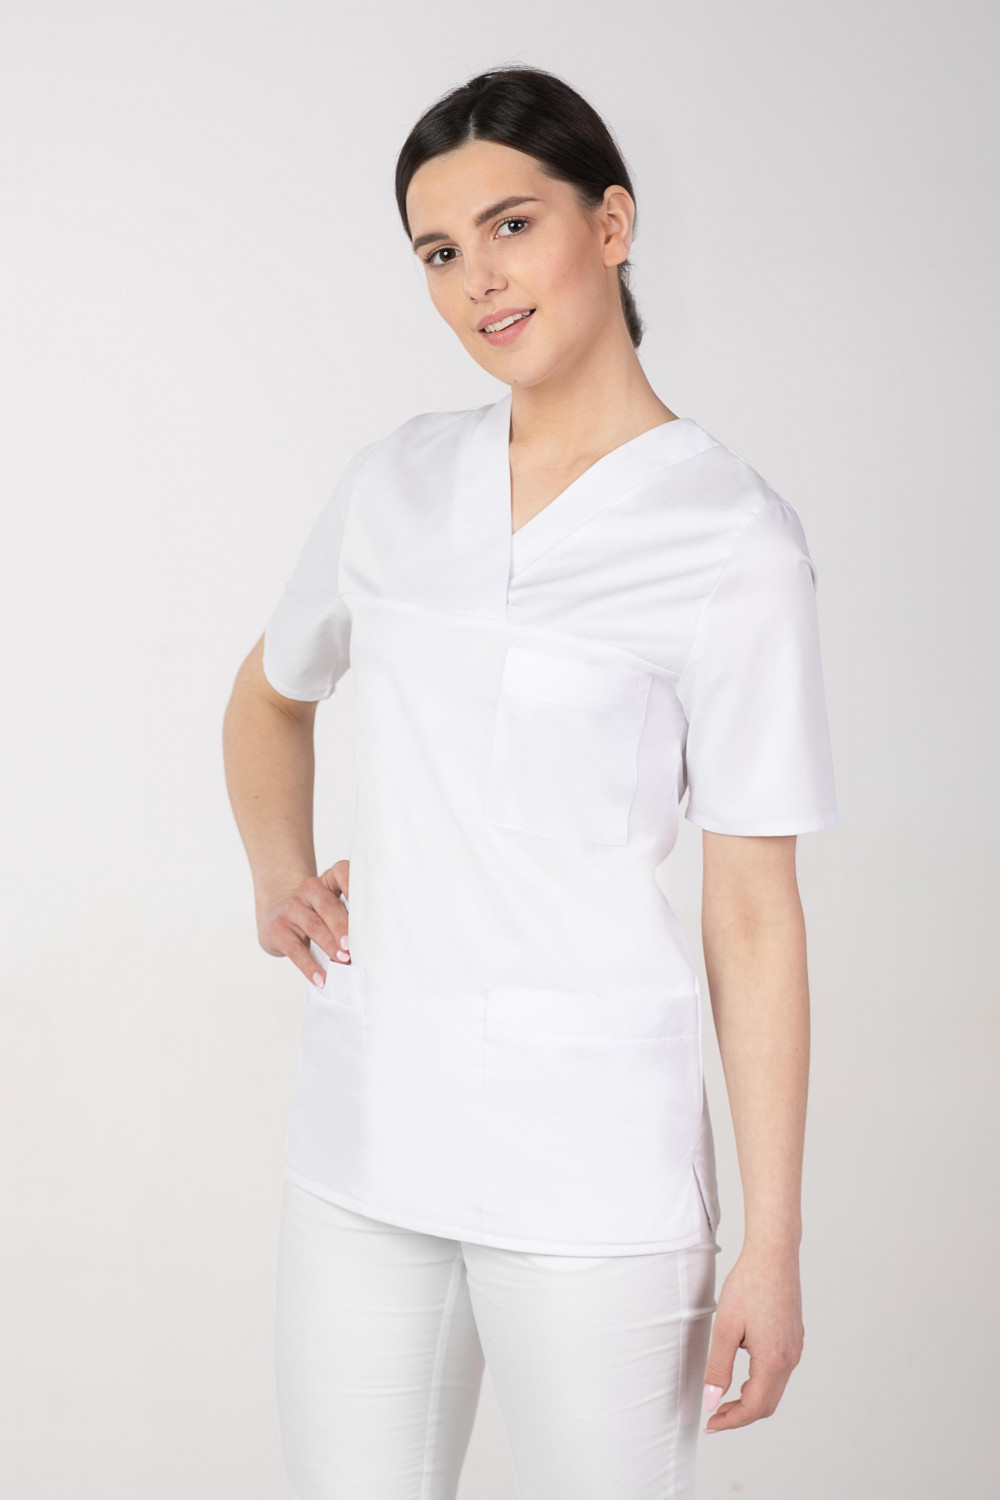 Bluza damska medyczna biała M-074